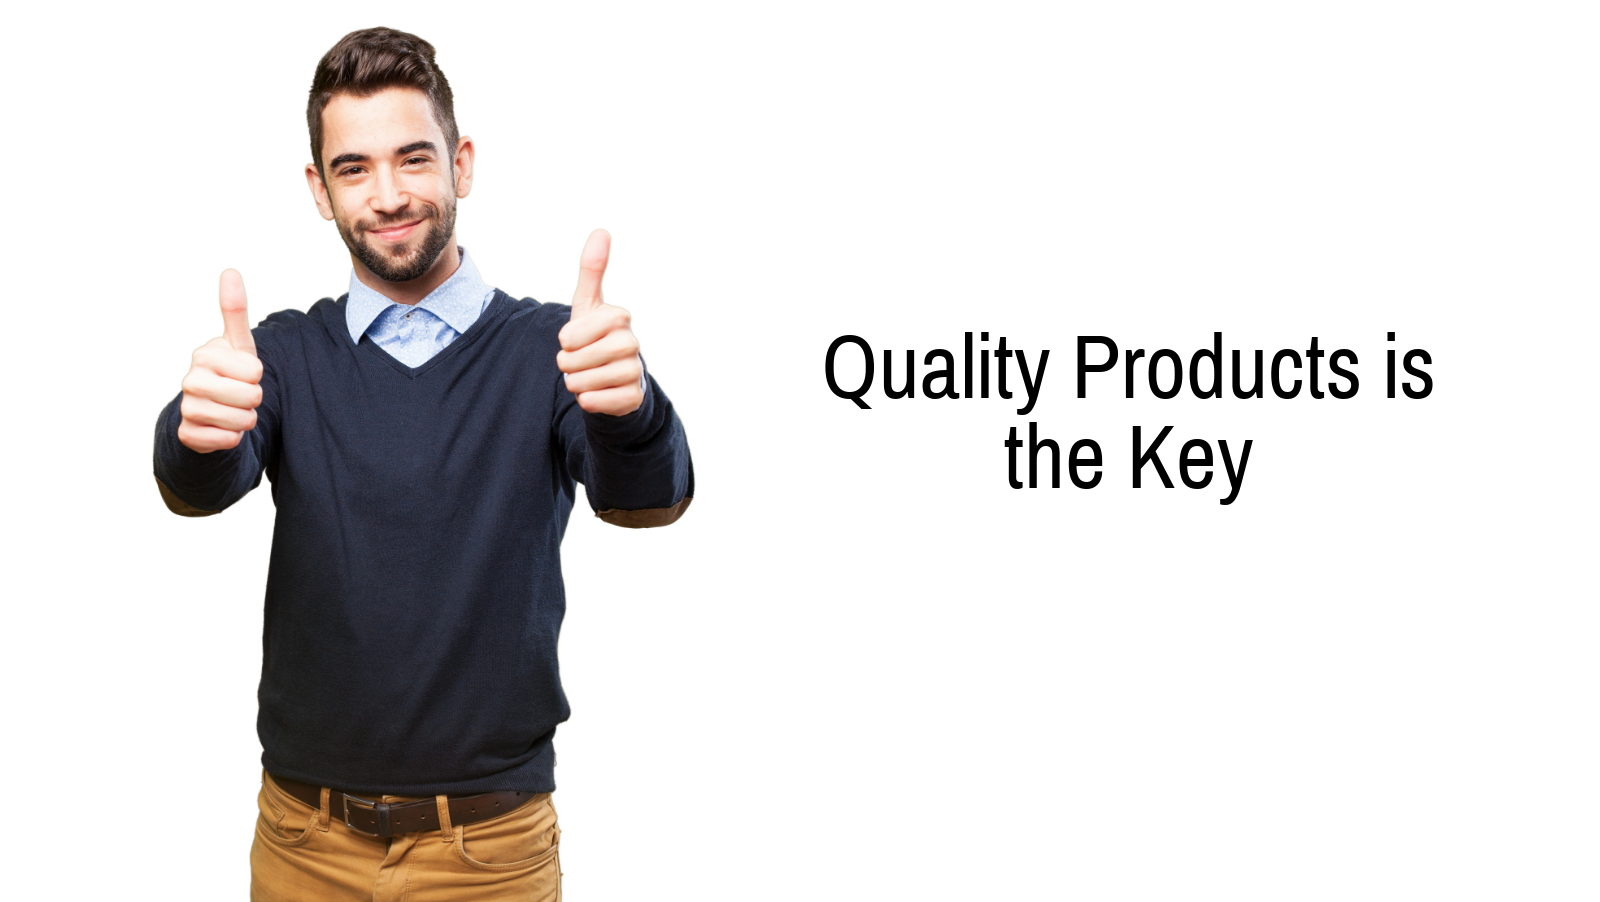 Des produits de qualité sont la clé - Comment sélectionner les meilleurs fournisseurs de Dropshipping